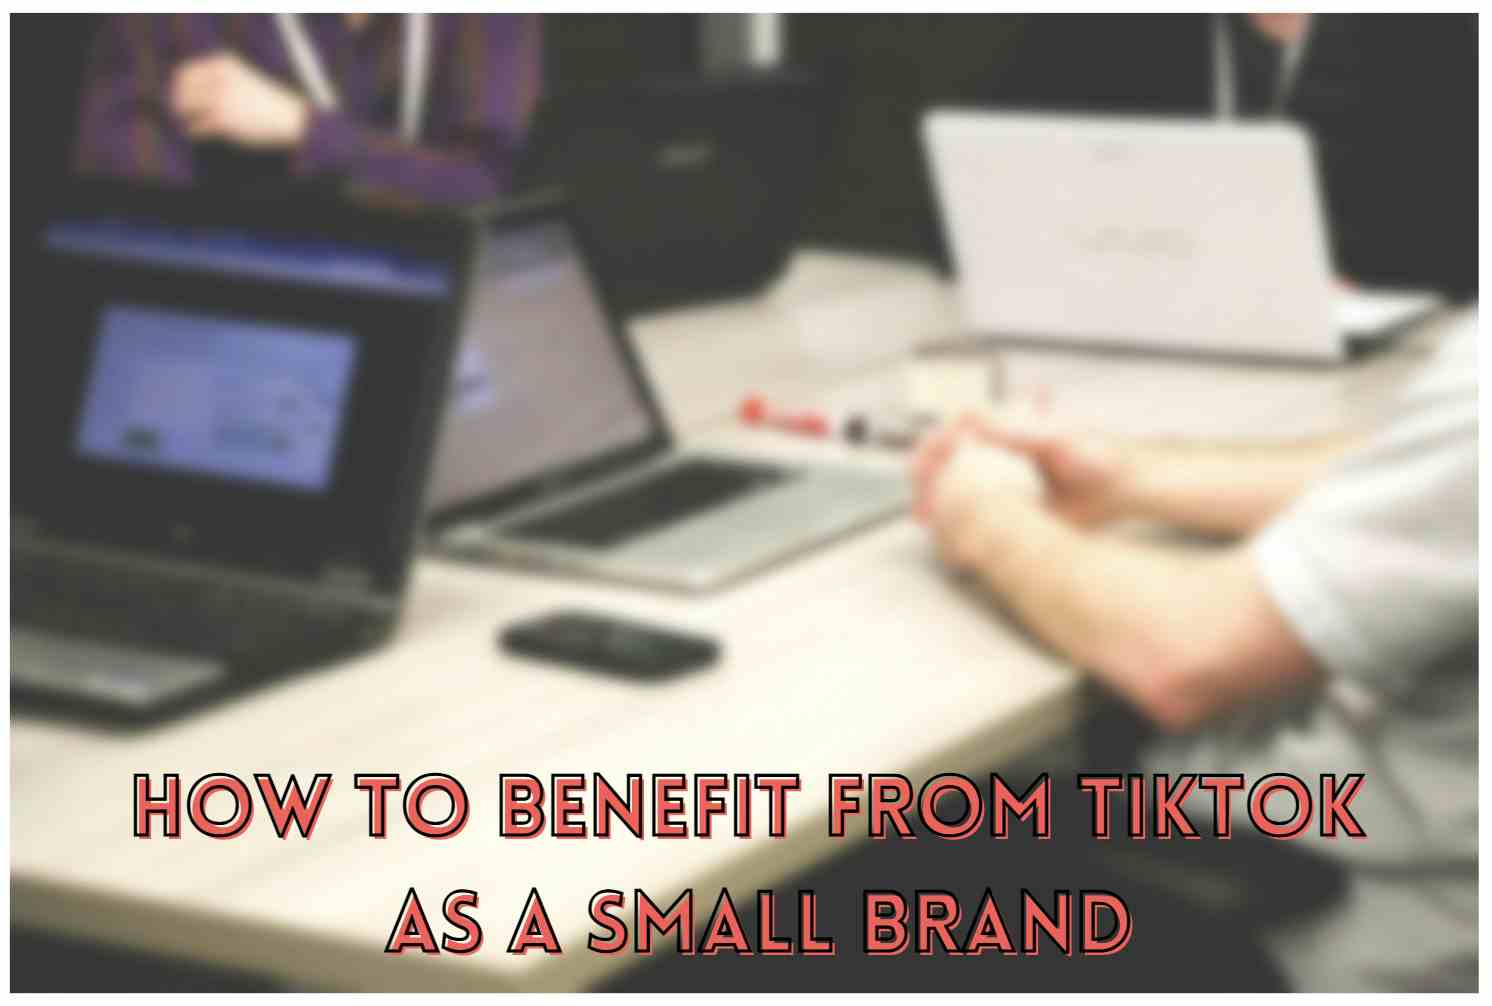 Jak skorzystać z TikTok jako małej marki?